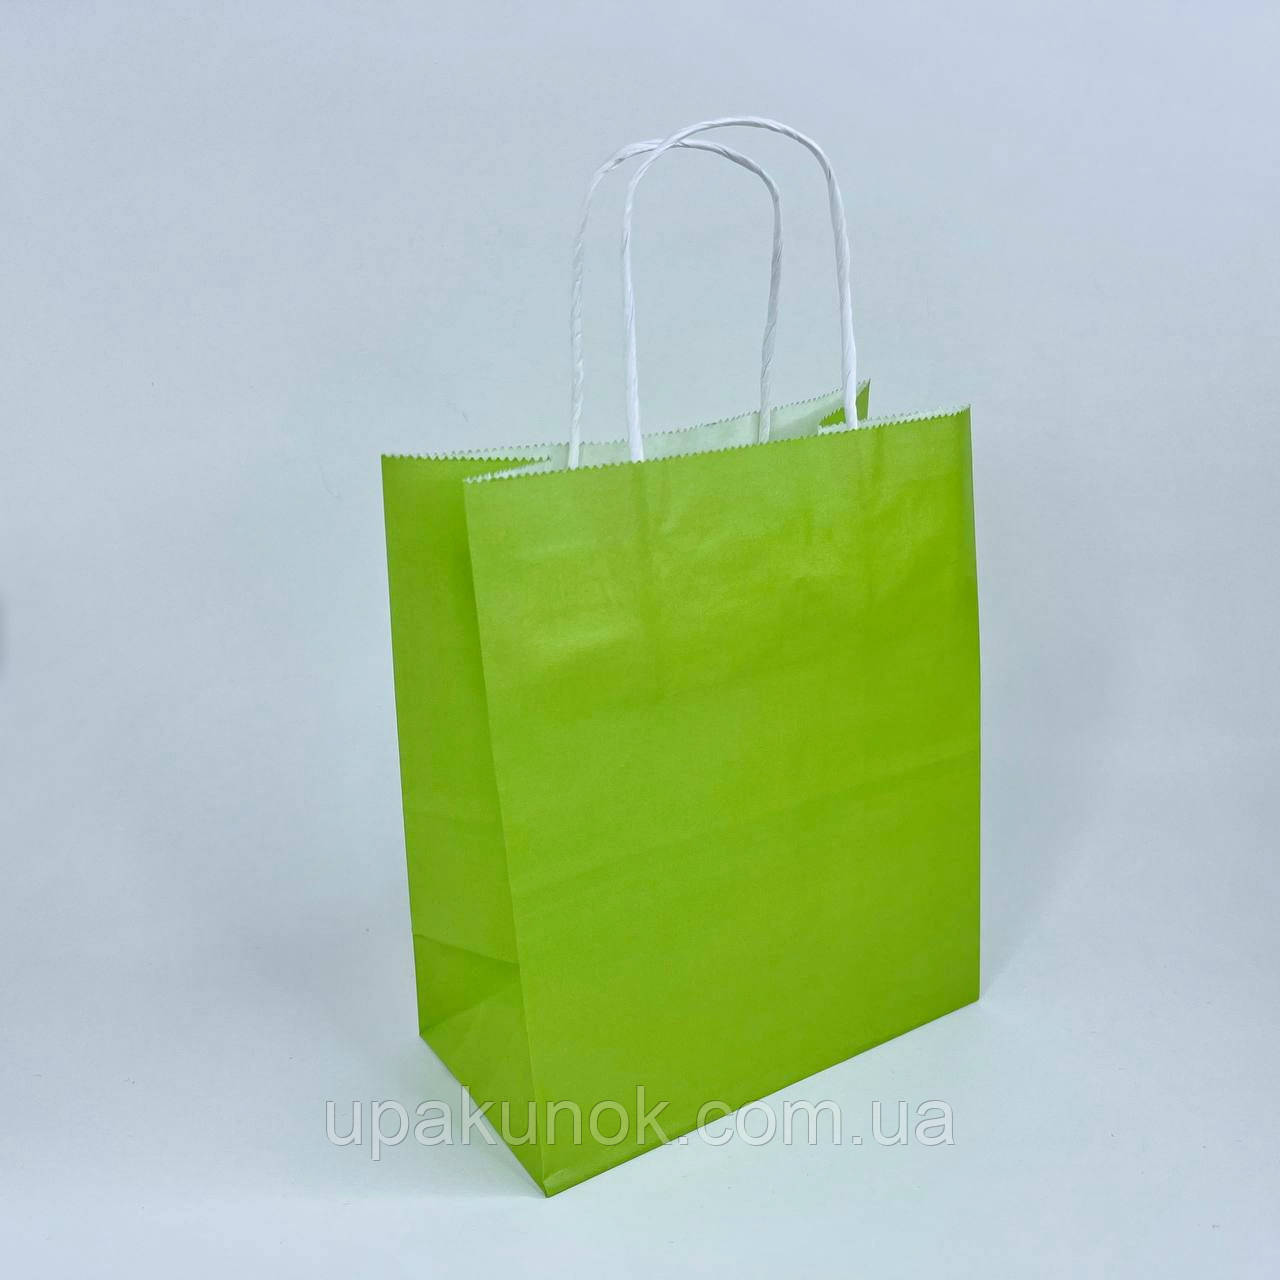 Крафт-пакет, 180*95*215 мм, з ручками, зелений